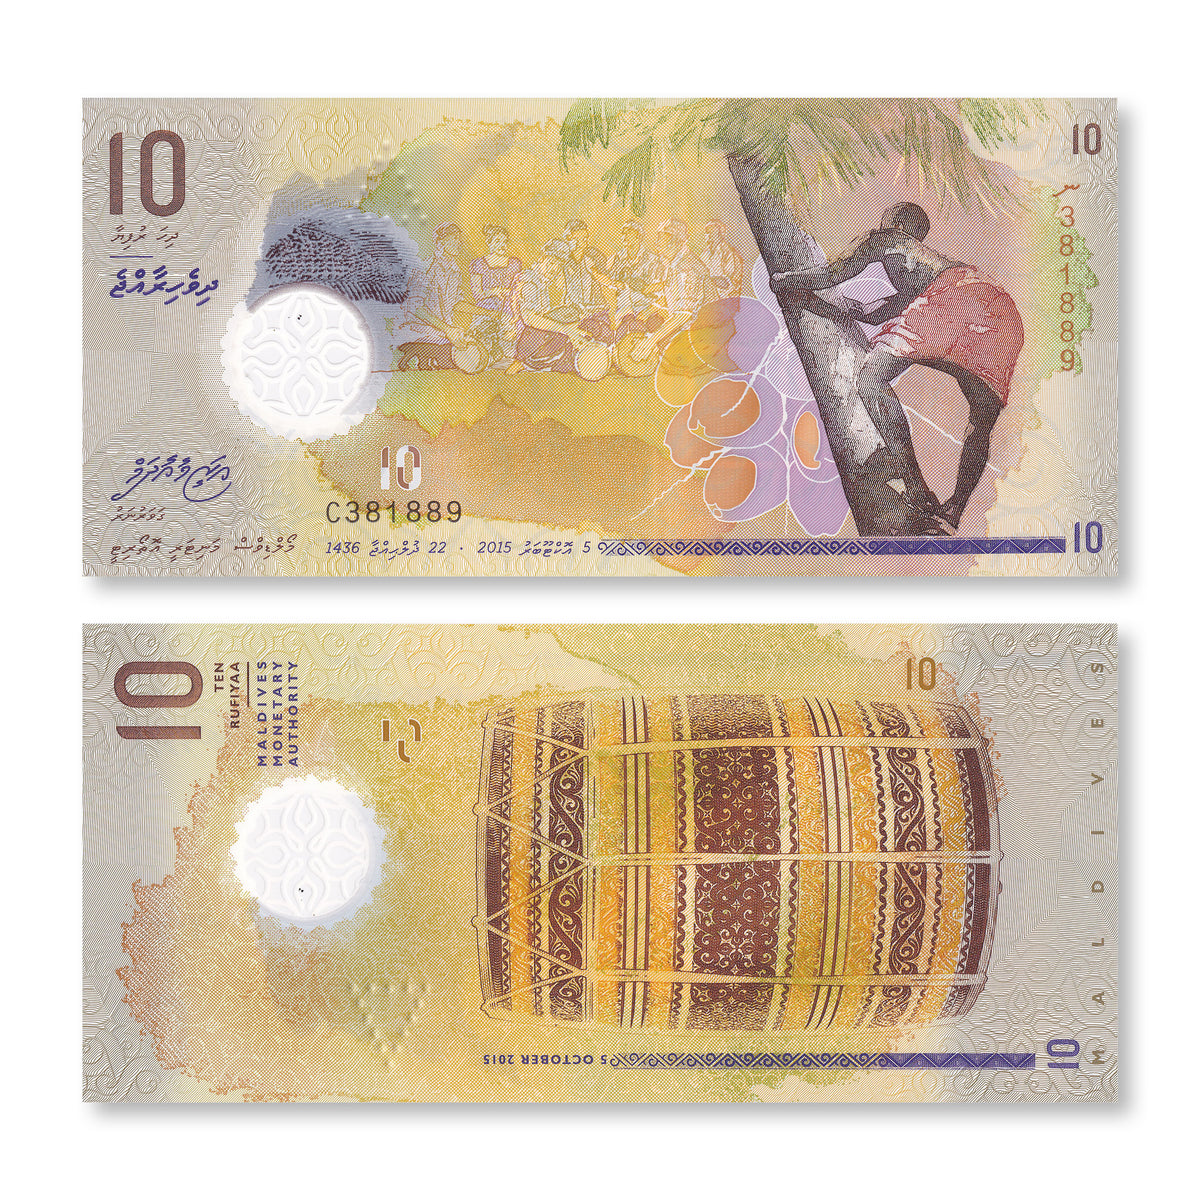 Maldives 10 Rufiyaa, 2015, B216a, P26, UNC - Robert's World Money - World Banknotes